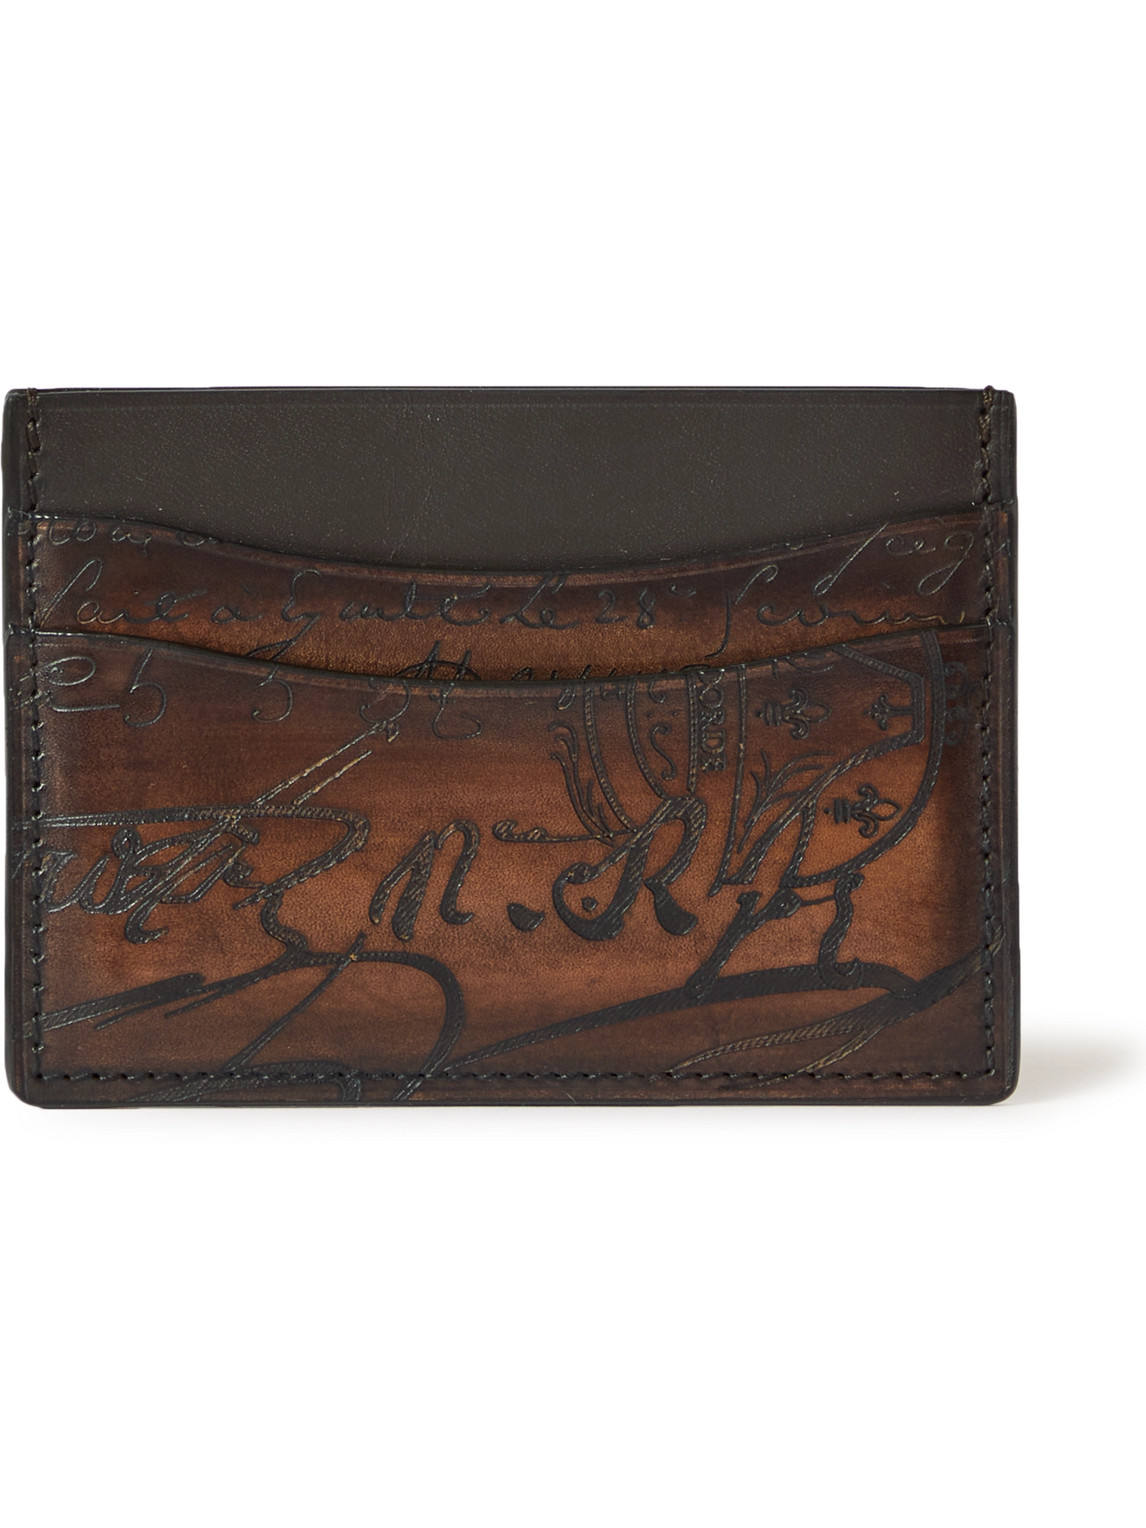 Berluti - Scritto Leather Cardholder - Men - Brown von Berluti